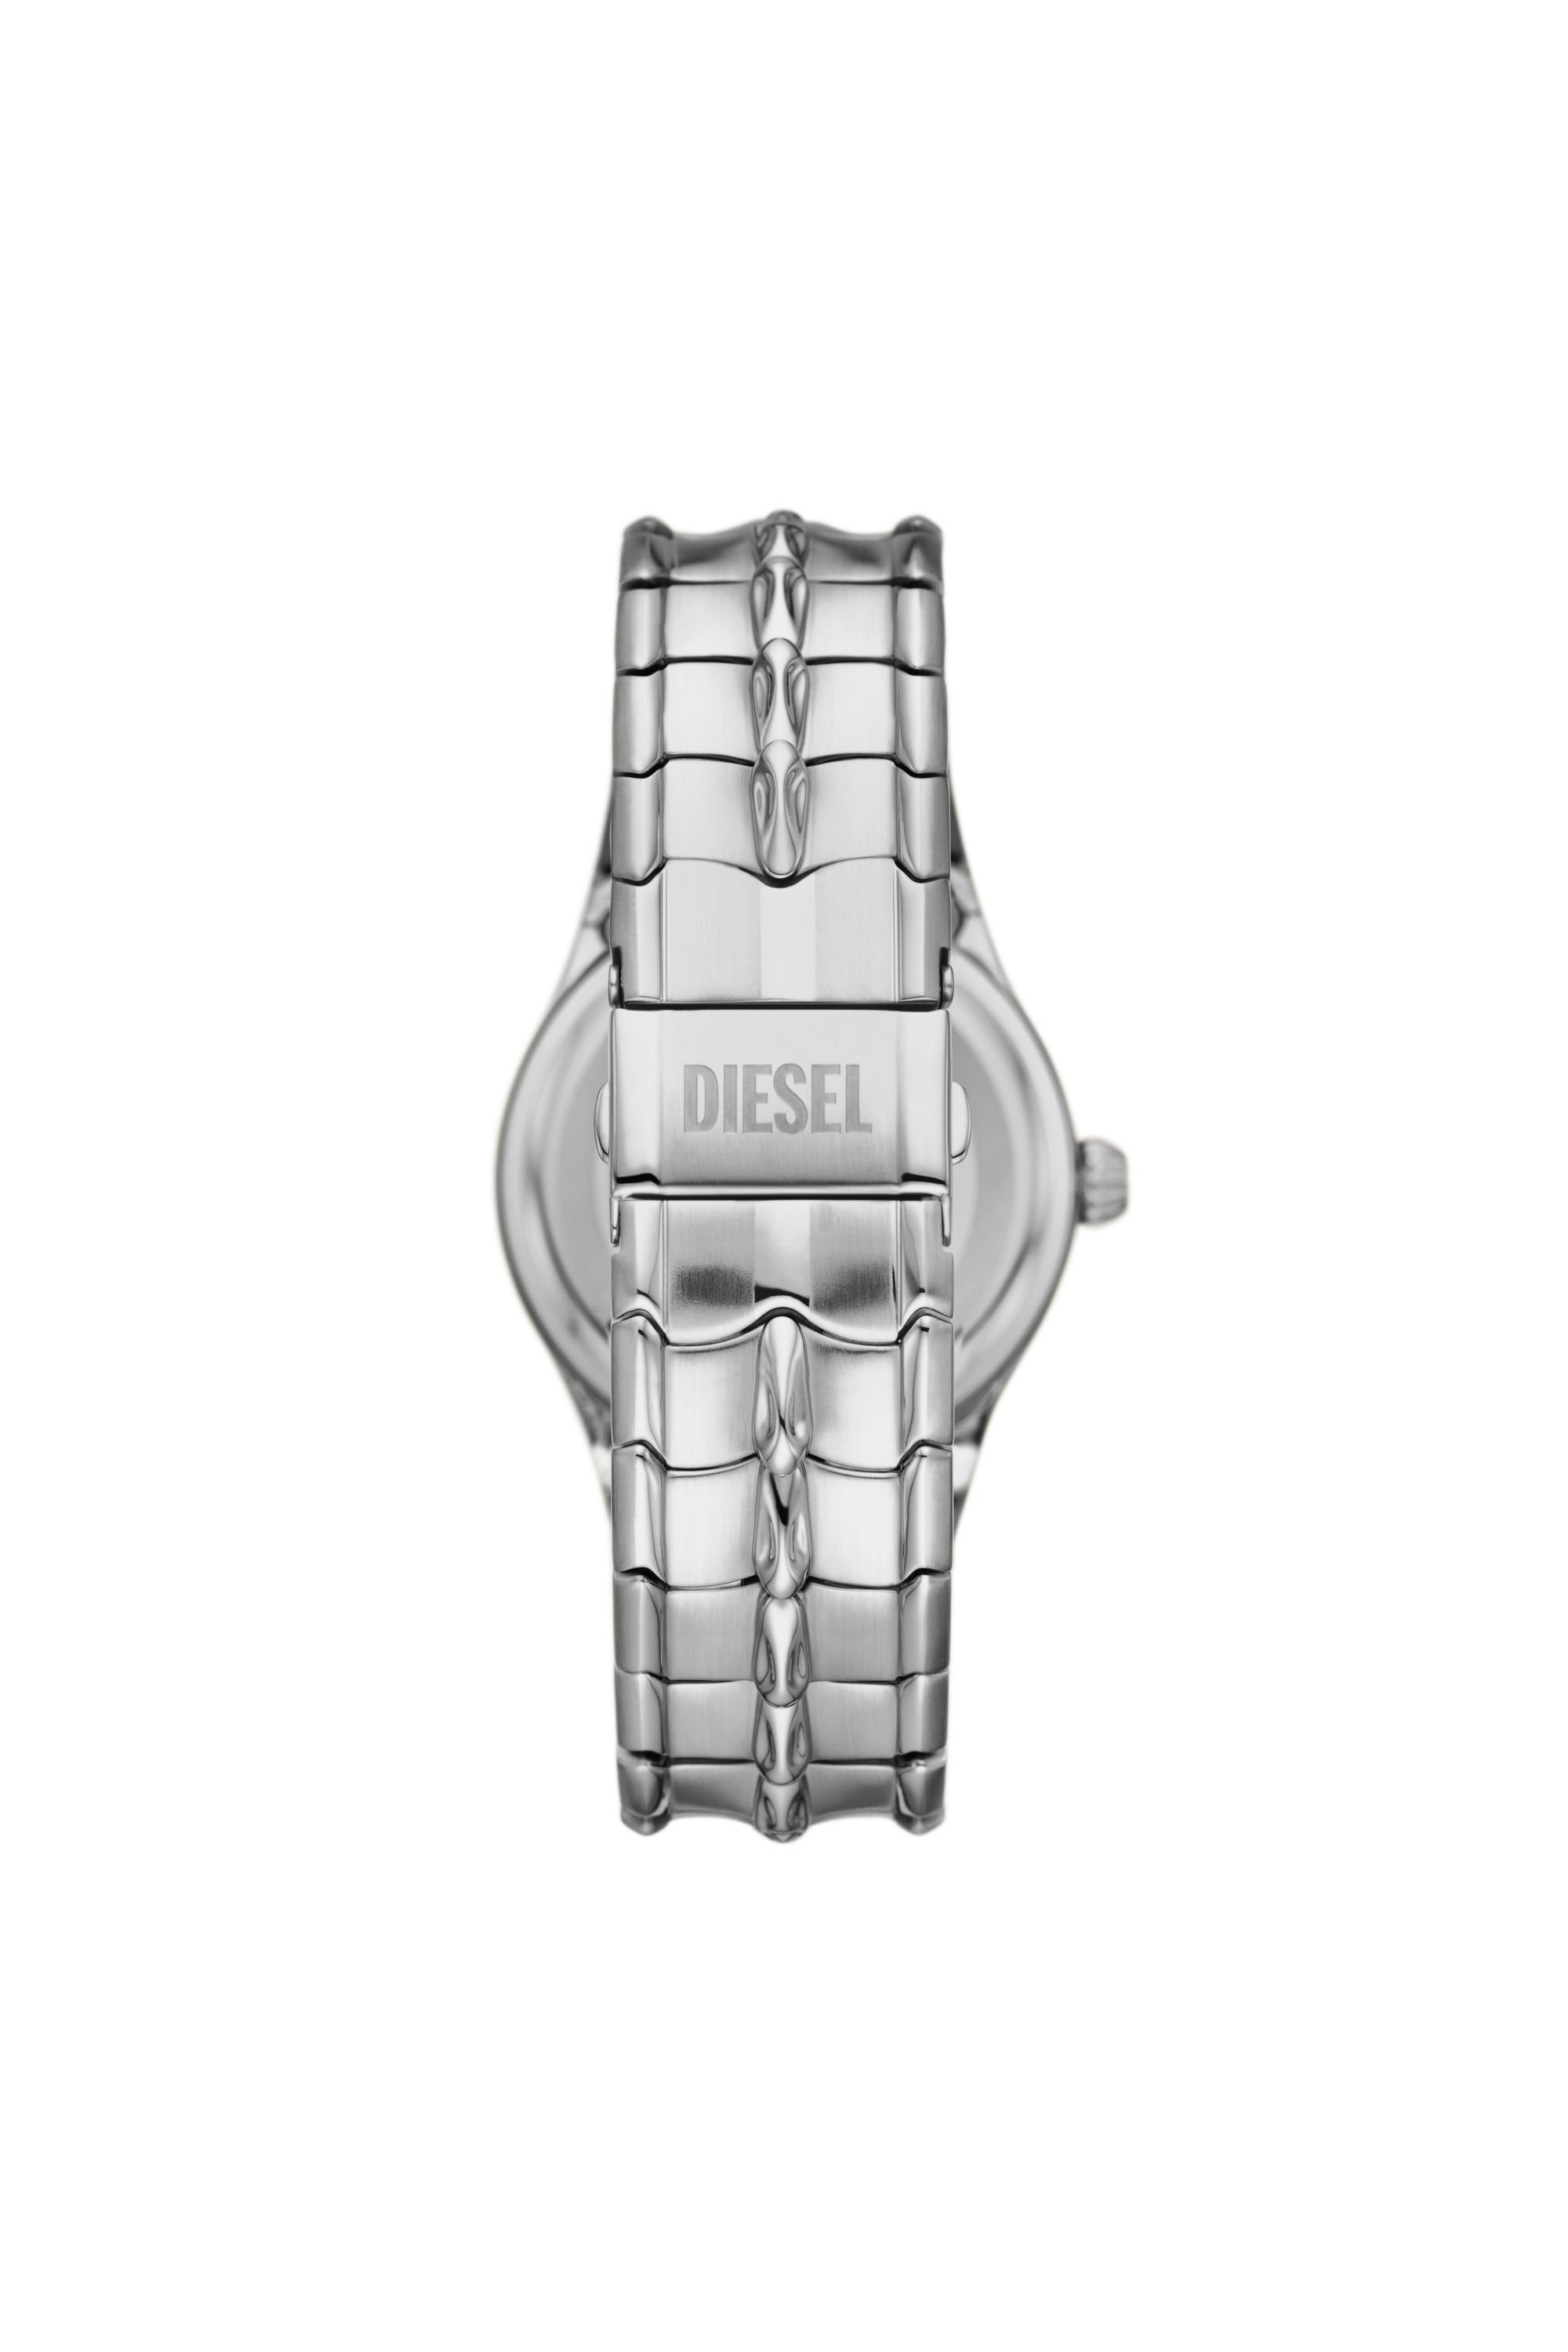 Diesel - DZ2185, Silver - Image 2